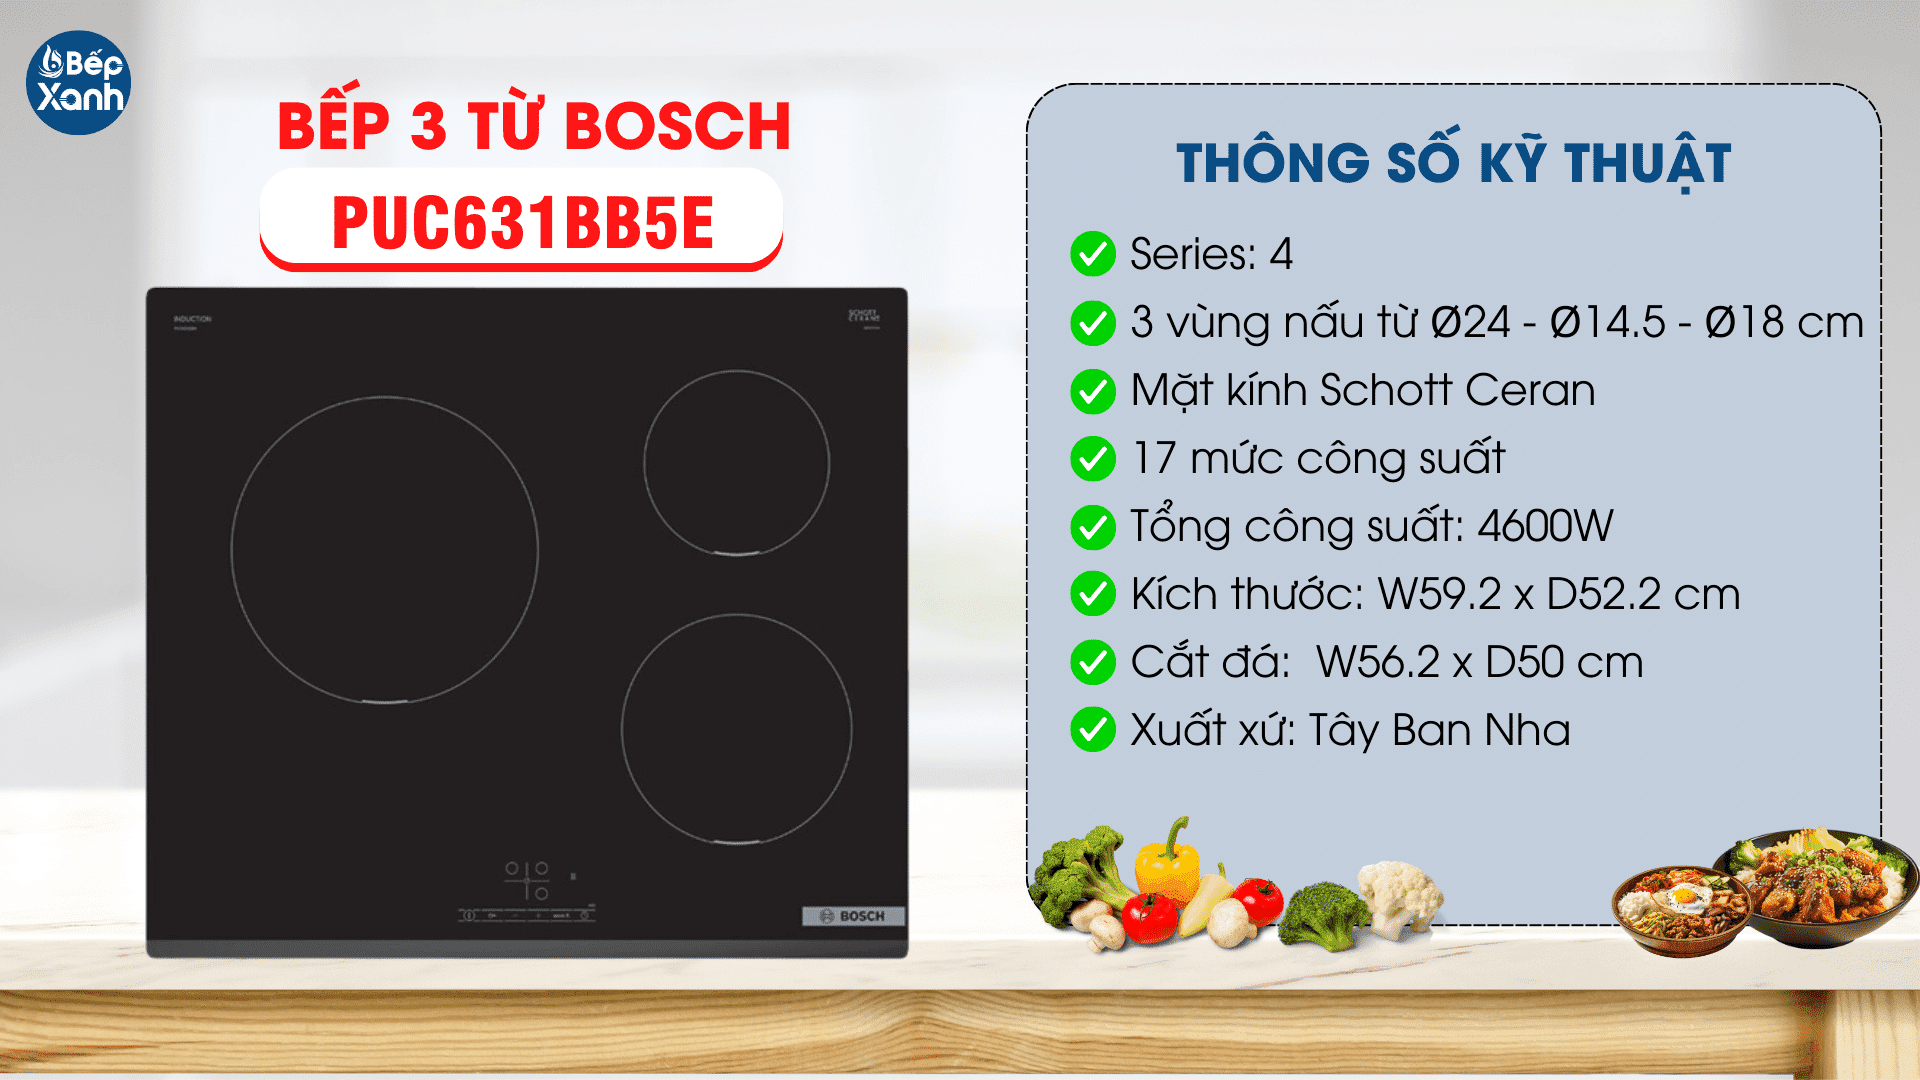 các thông số kỹ thuật của bếp từ Bosch PUC631BB5E